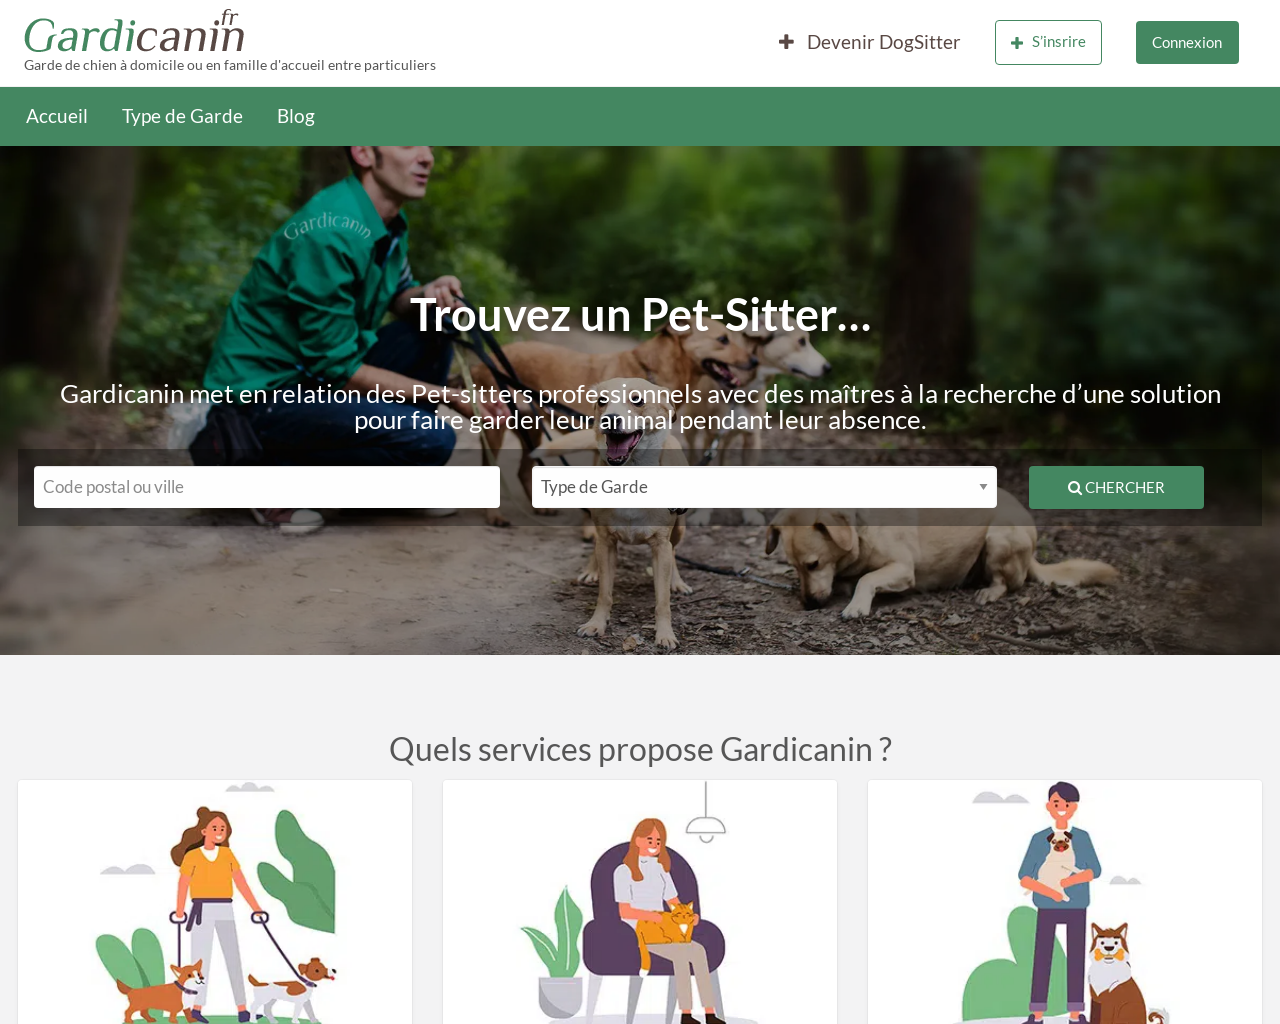 www.gardicanin.fr